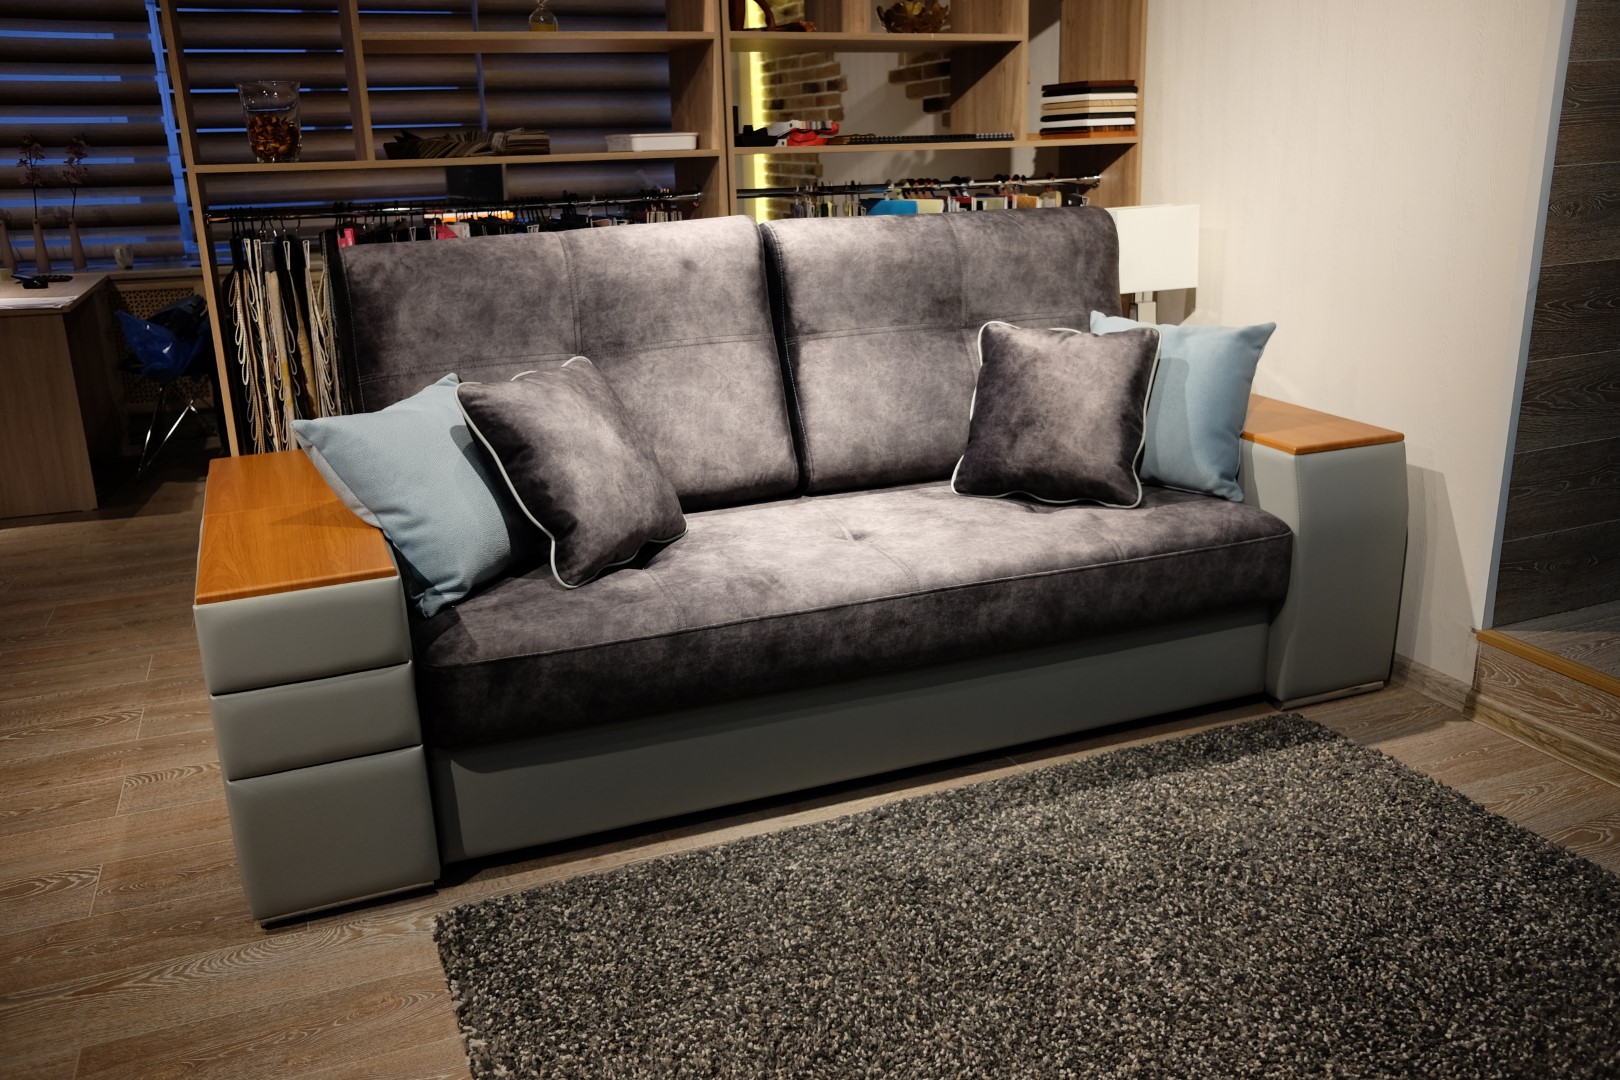 Купите диван «IQ 120» за 123425 рублей на распродаже от производителя«Умные Диваны»